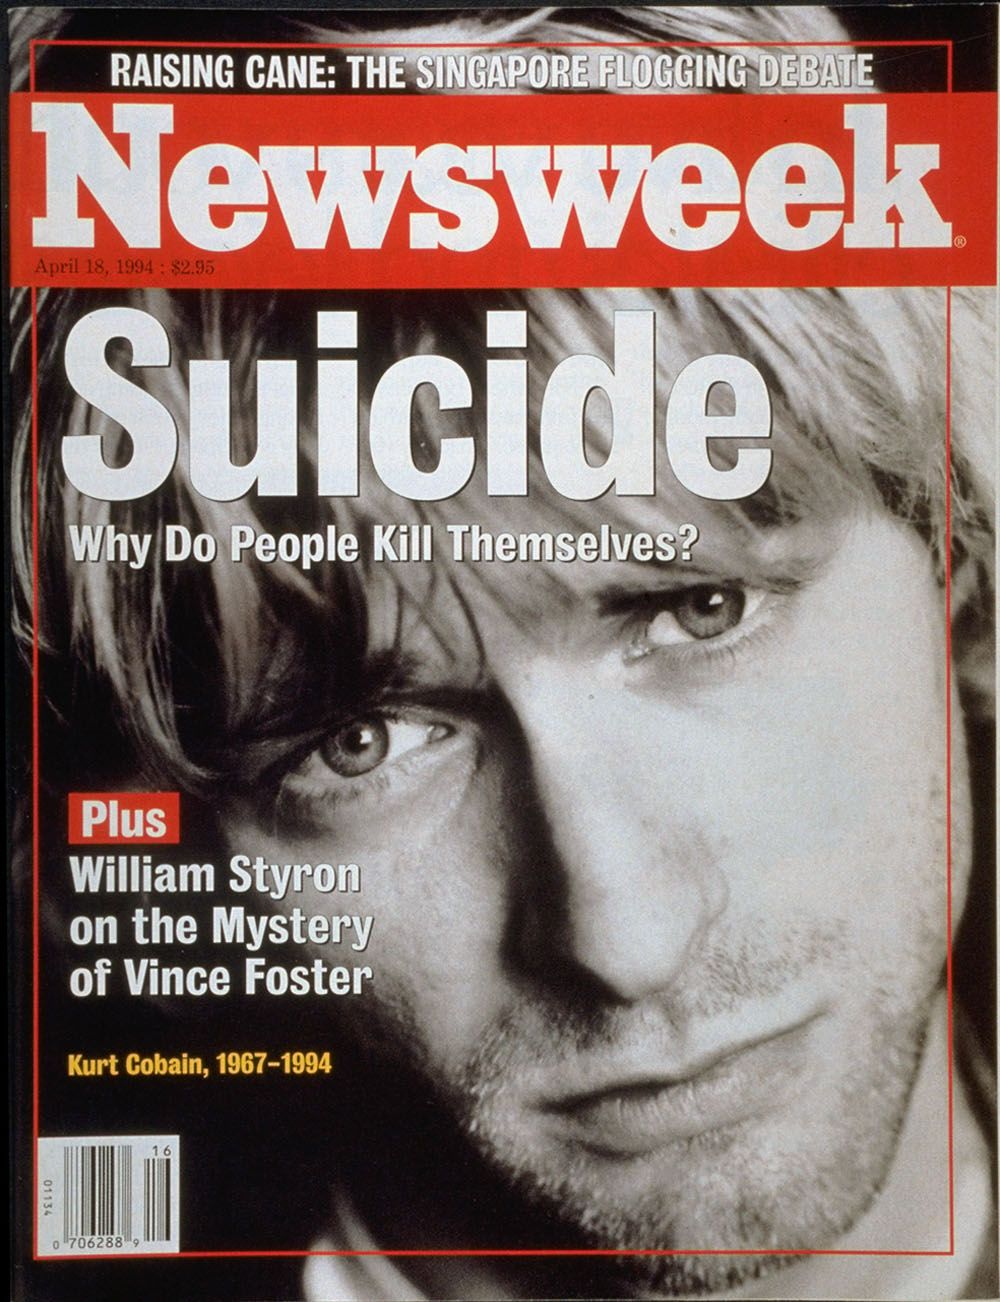 30 χρόνια από την αυτοκτονία που στιγμάτισε τη Generation Χ, παρακολουθούμε το σπιράλ της κατηφορικής πορείας του Cobain. 